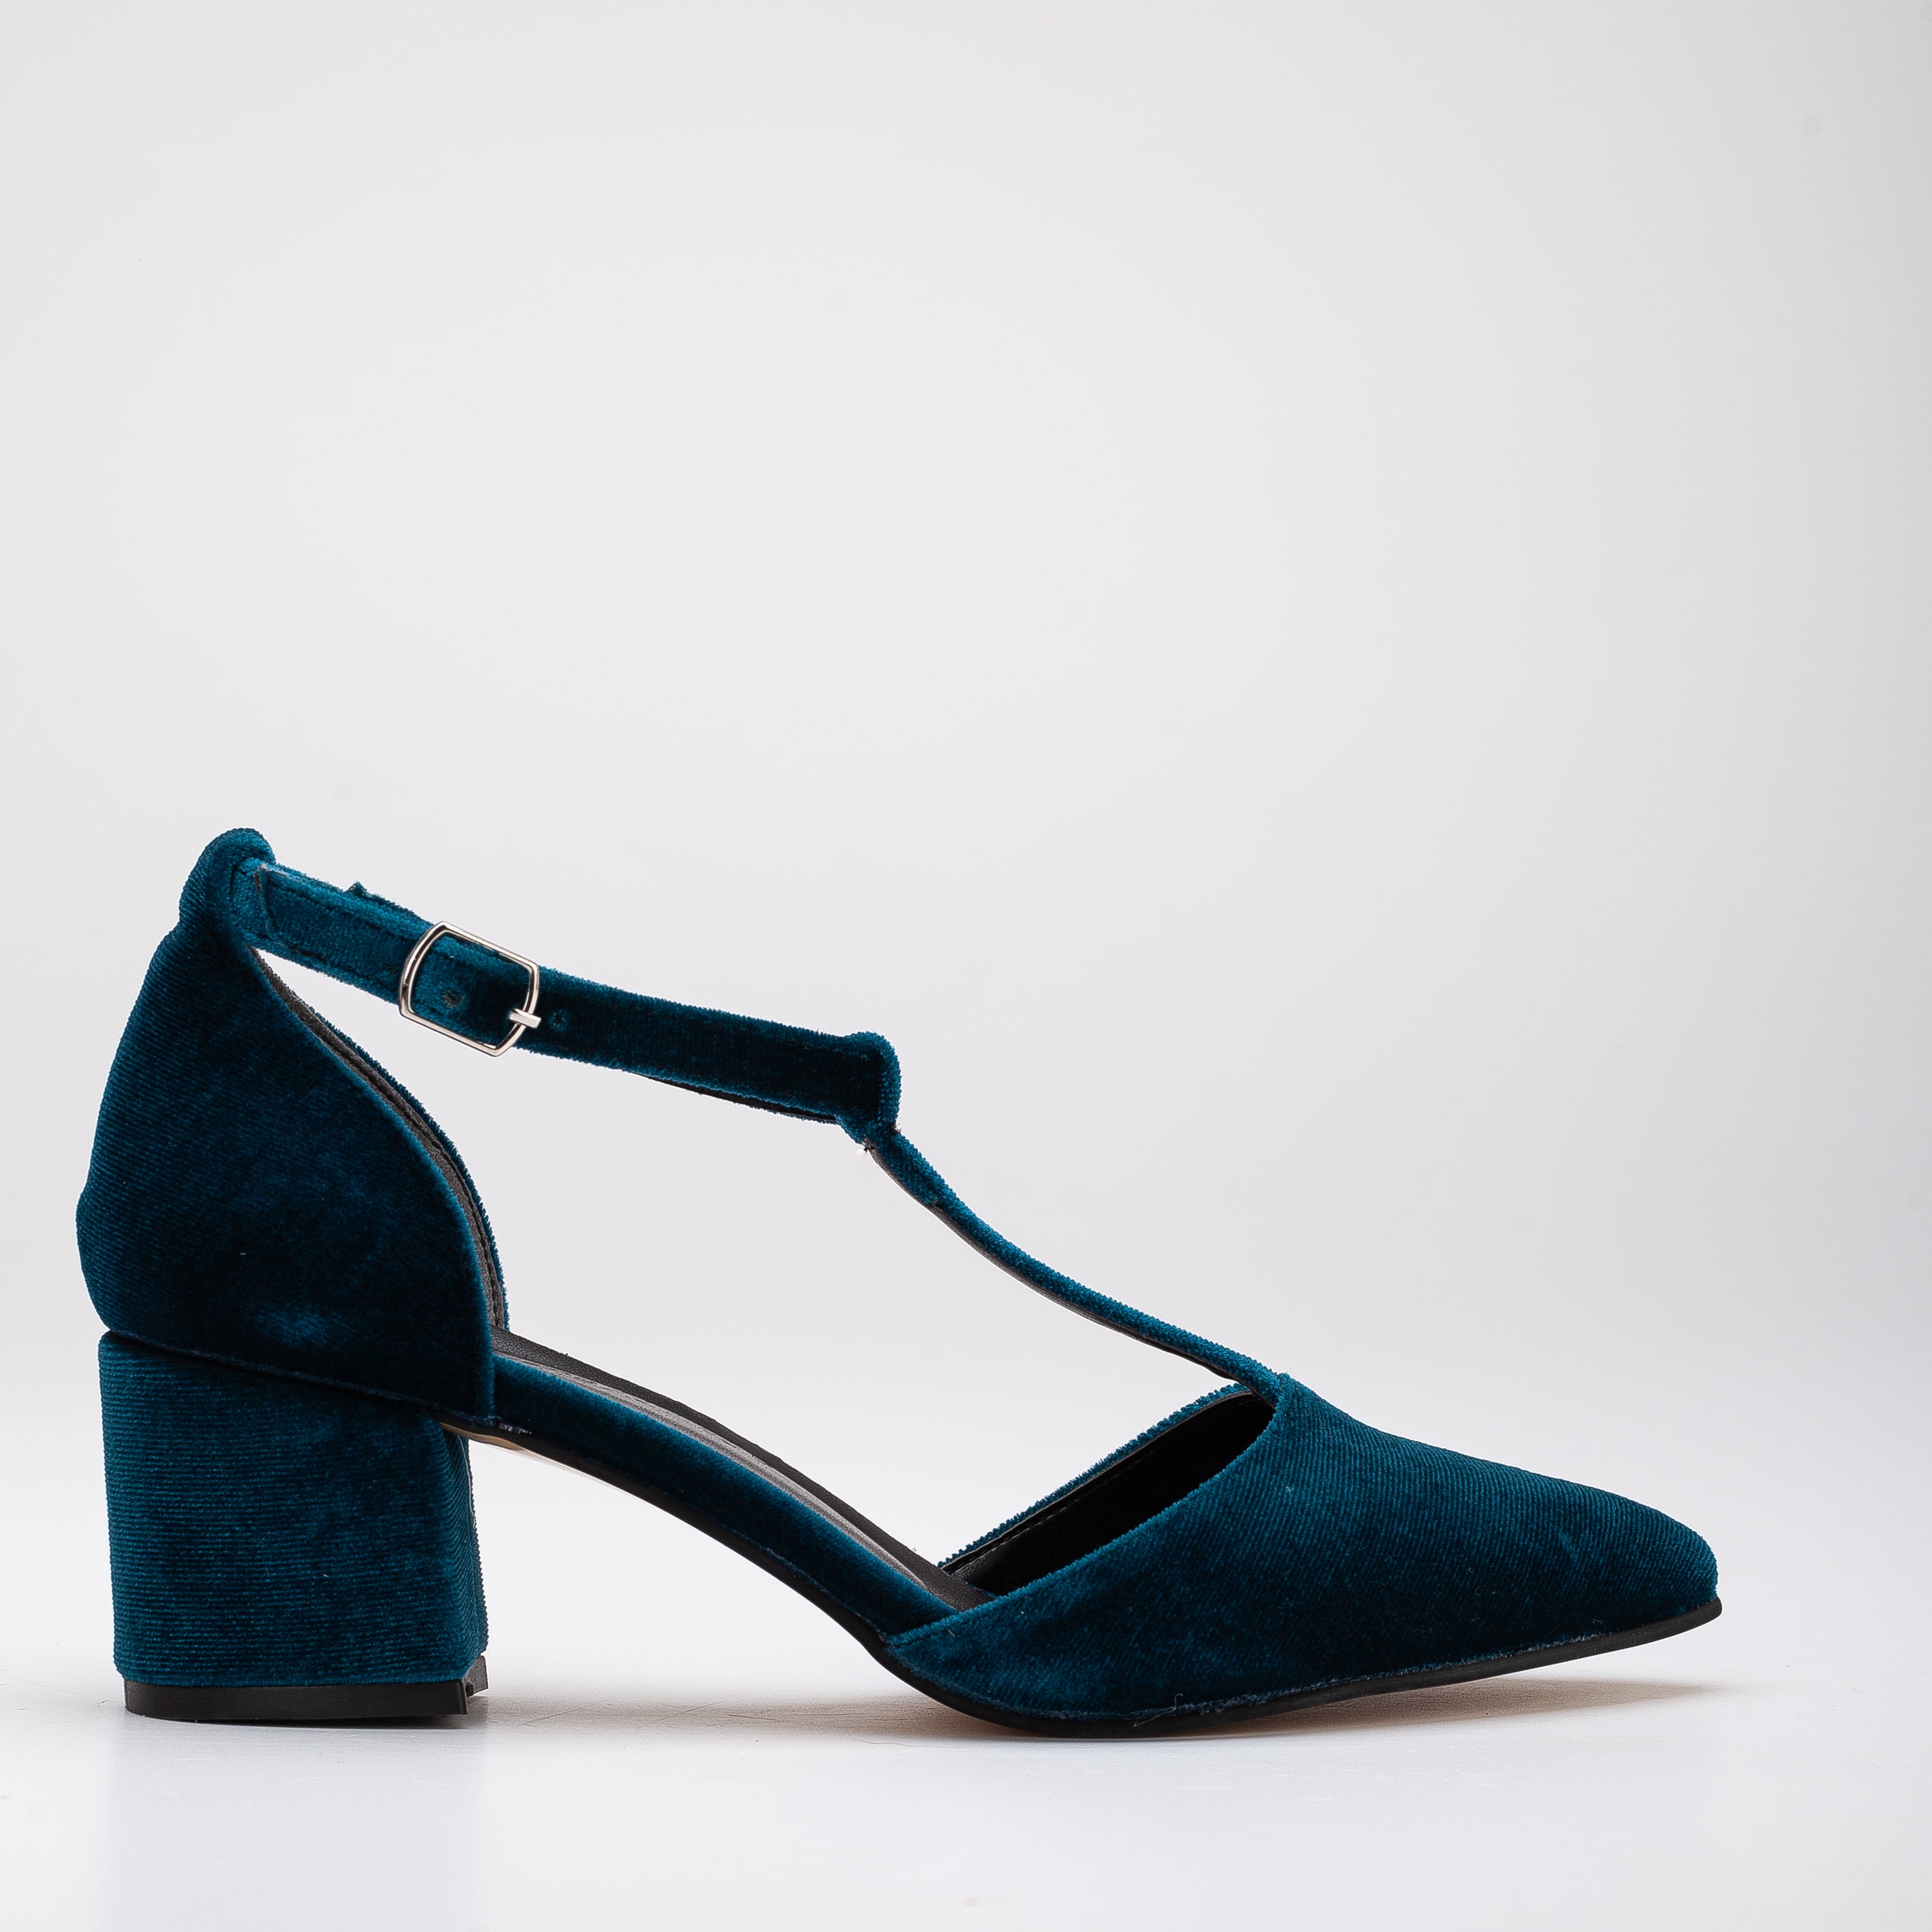 Blue Velvet Shoes, Teal Blue Velvet Shoes, Wedding Shoes, Mary Jane Shoes, Blue Low Heels, Blue Block Heels, Blue Bridal Shoes, Tango Shoes